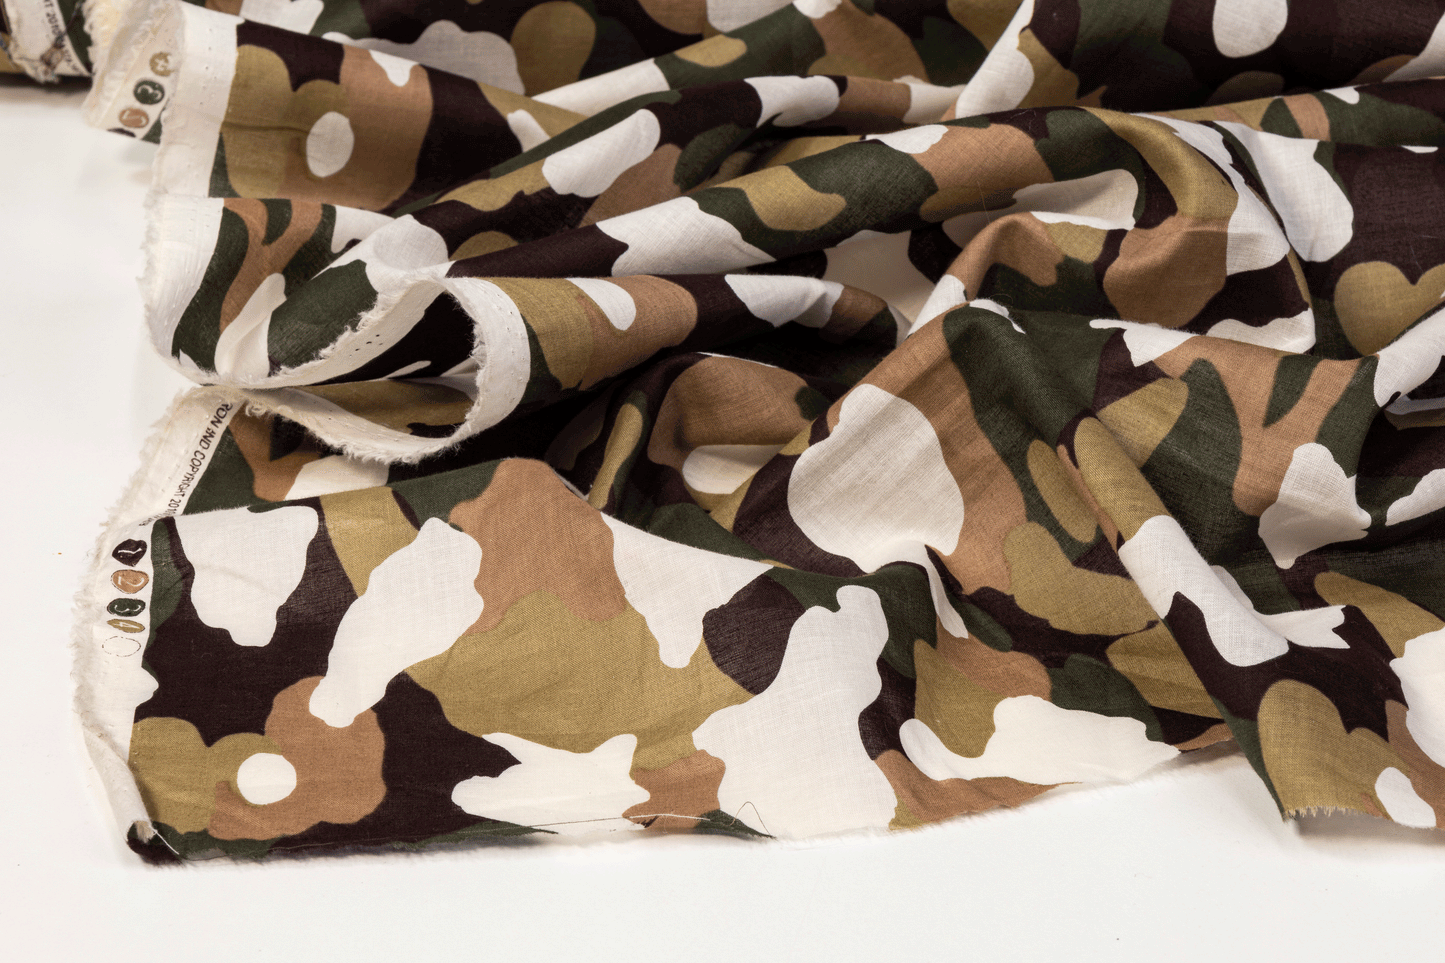 Camouflage Printed Cotton Voile - Khaki, White - Prime Fabrics